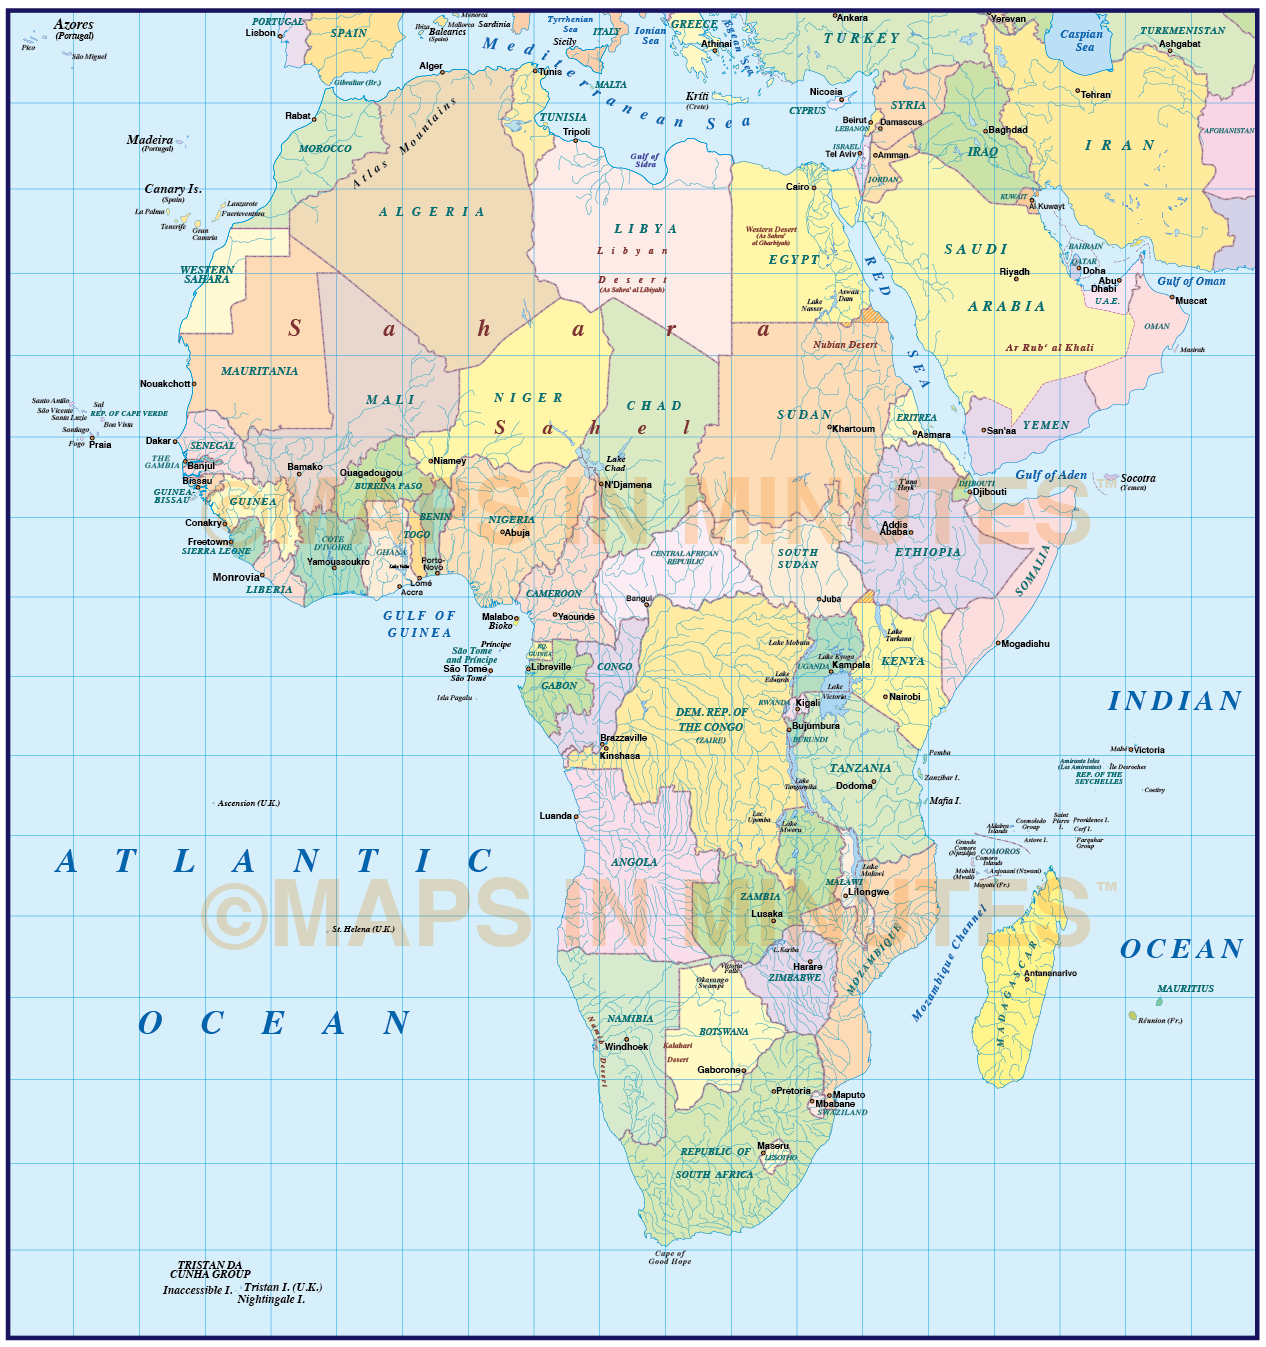 Африка по отношению 0 и 180 долготы. Карта Африки с широтой и долготой. Карта Африки с широтами. Карта Африки с параллелями. Политическая карта Африки.